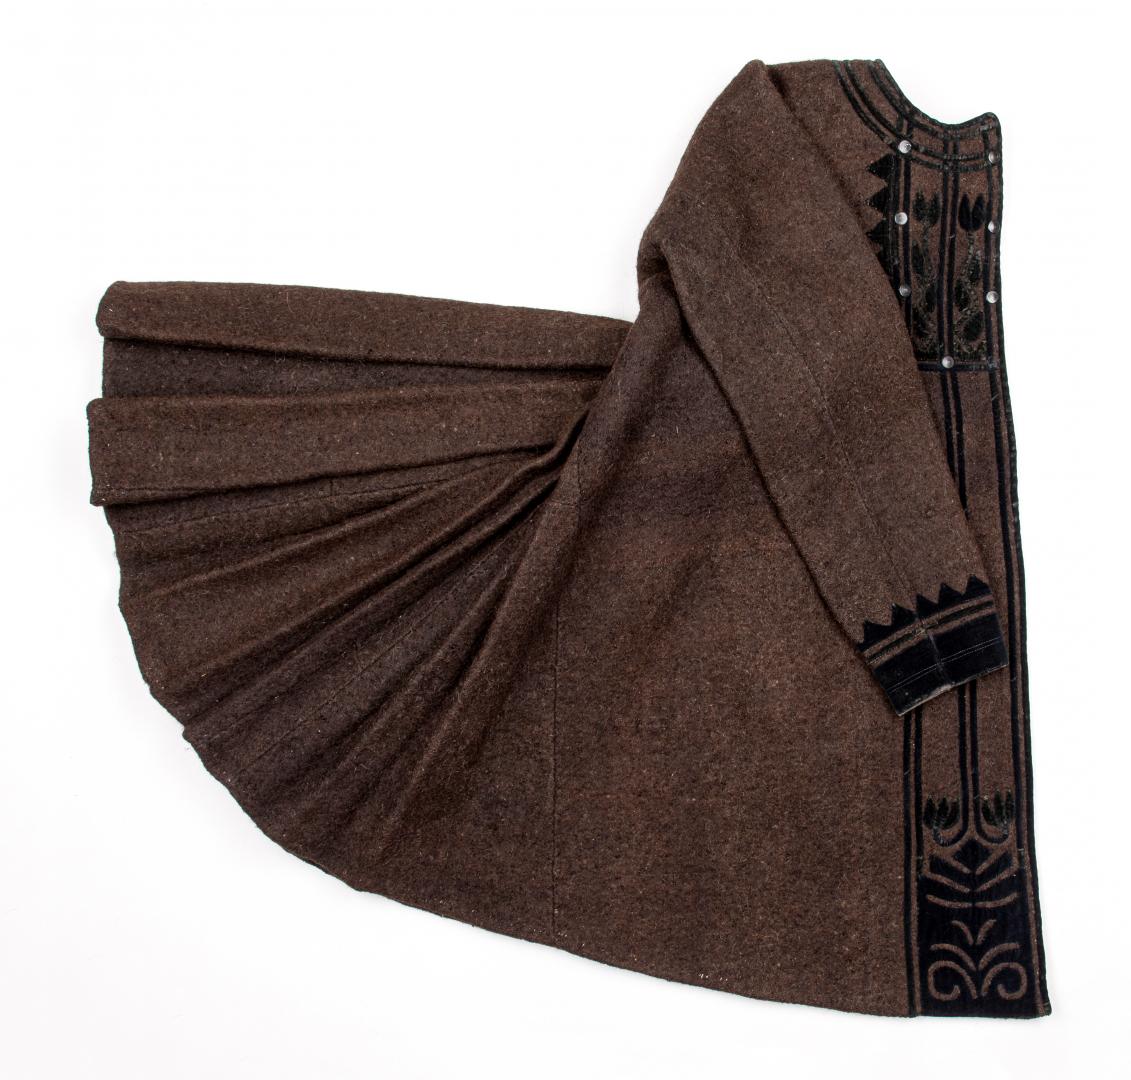 Yupka (homemade cloth women's overcoat)